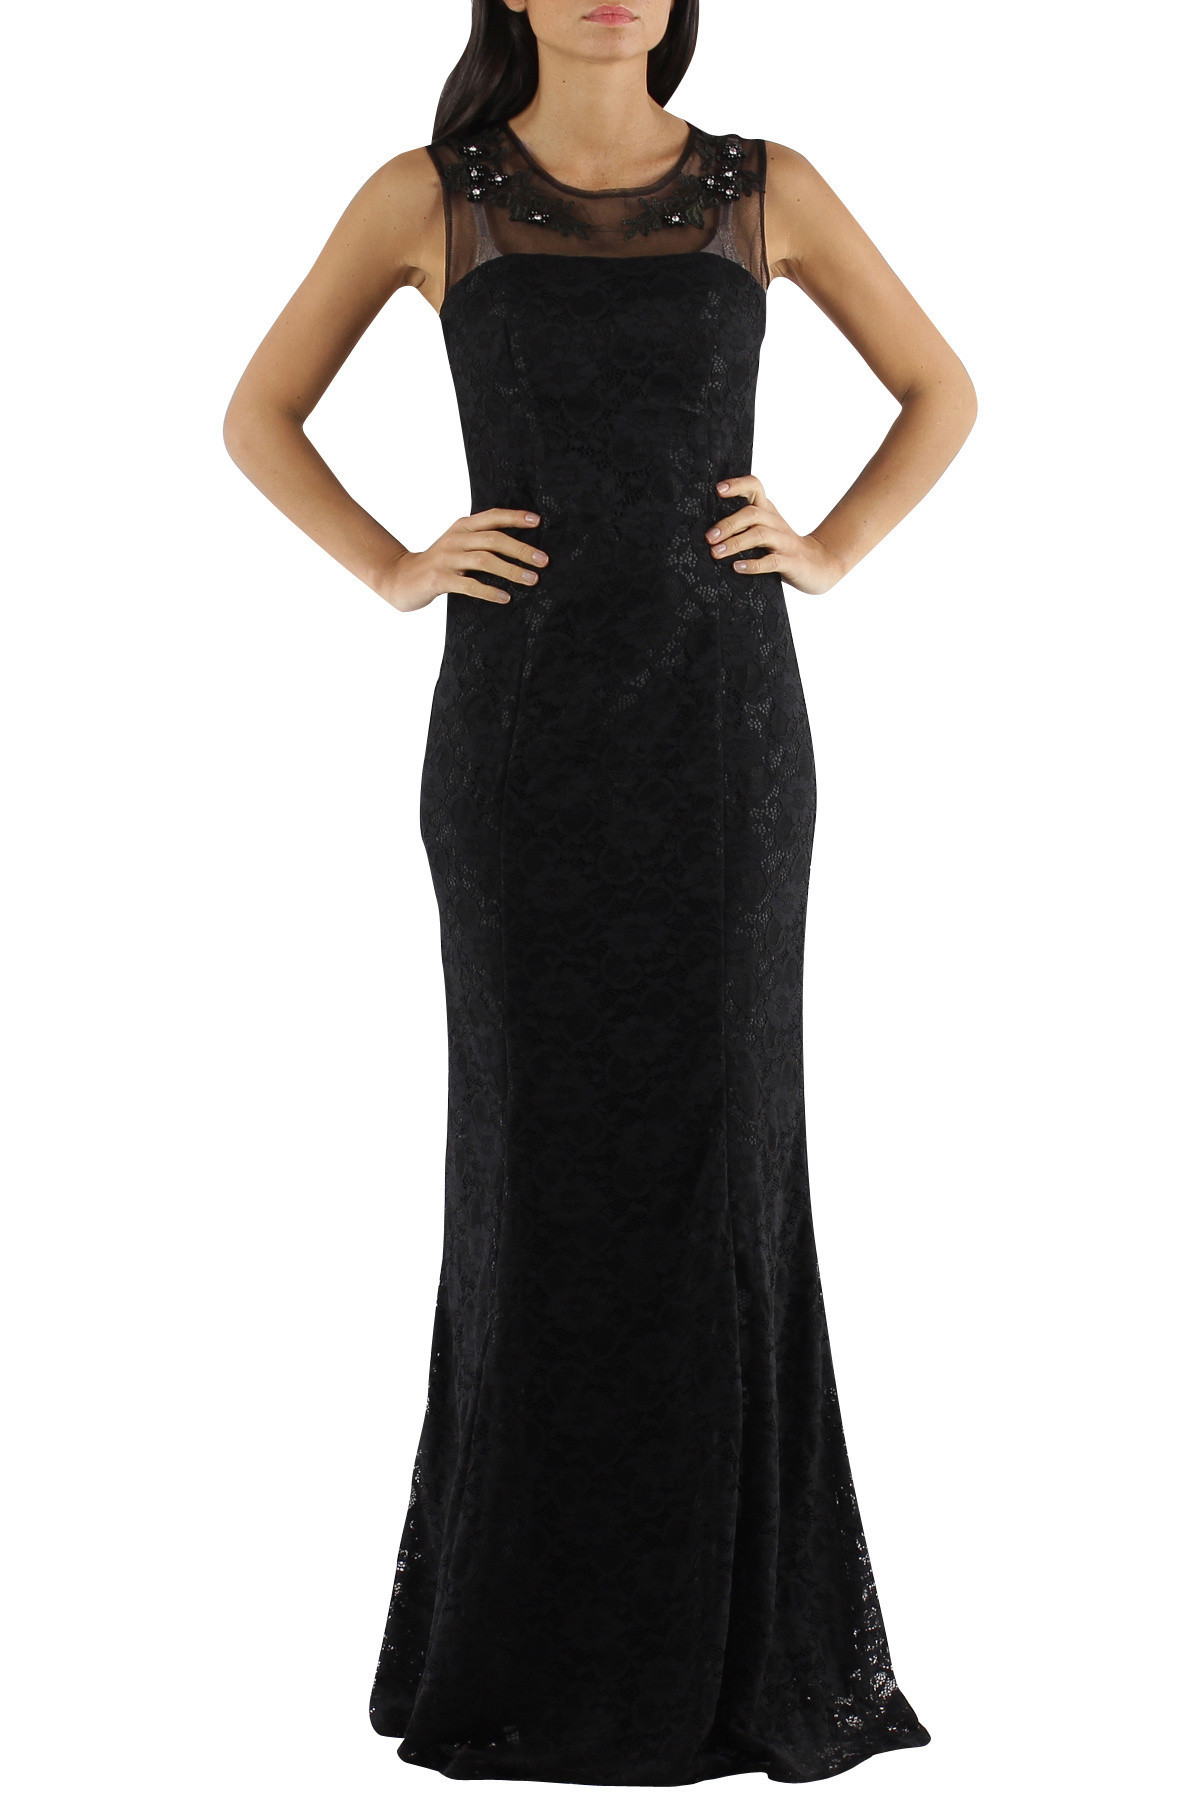 Spoločenské a plesové šaty krajkové dlhé luxusné CHARM'S Paris čierne - Čierna / XS - CHARM'S Paris XS